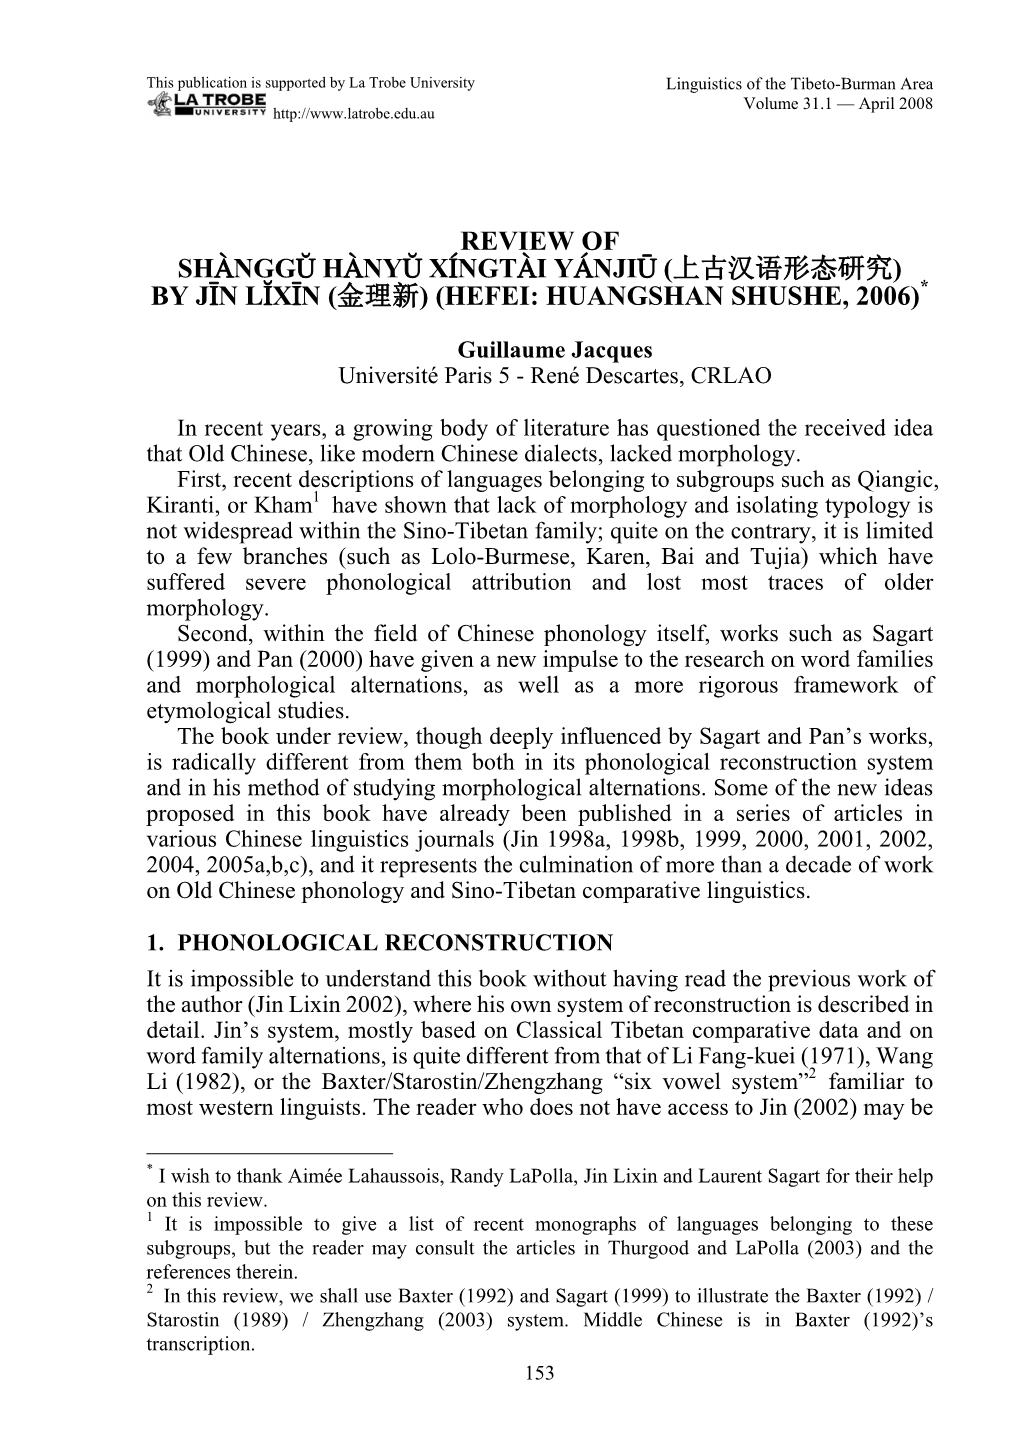 Review of Shànggŭ Hànyŭ Xíngtài Yánjiū (上古汉语形态研究) by Jīn Lĭxīn (金理新) (Hefei: Huangshan Shushe